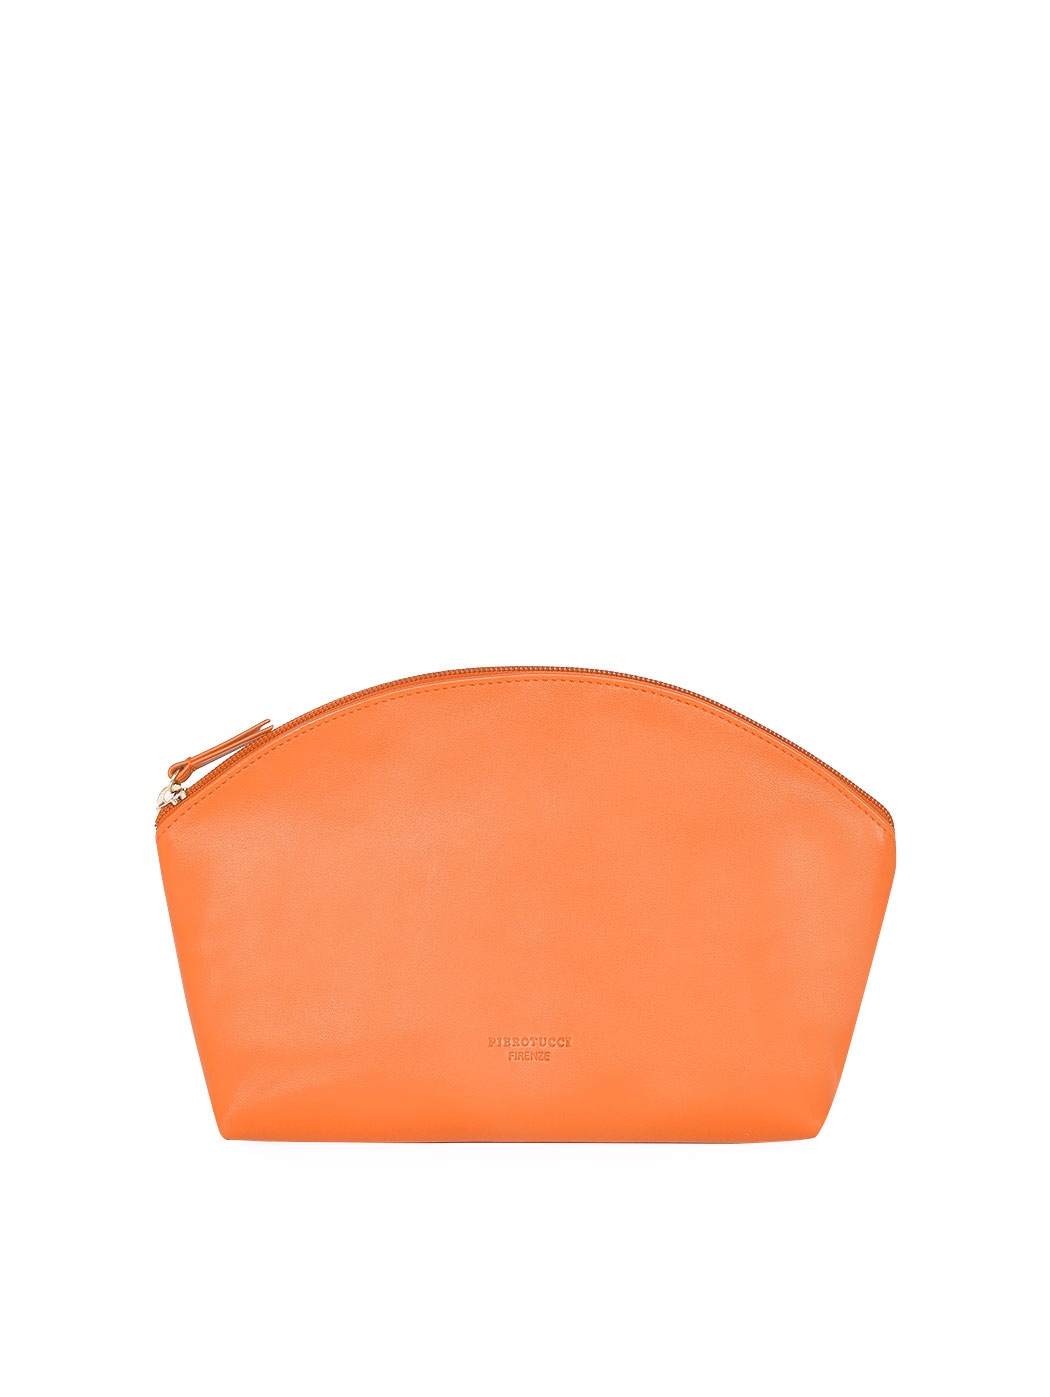 Pochette mezzaluna grande in pelle arancio con tracolla